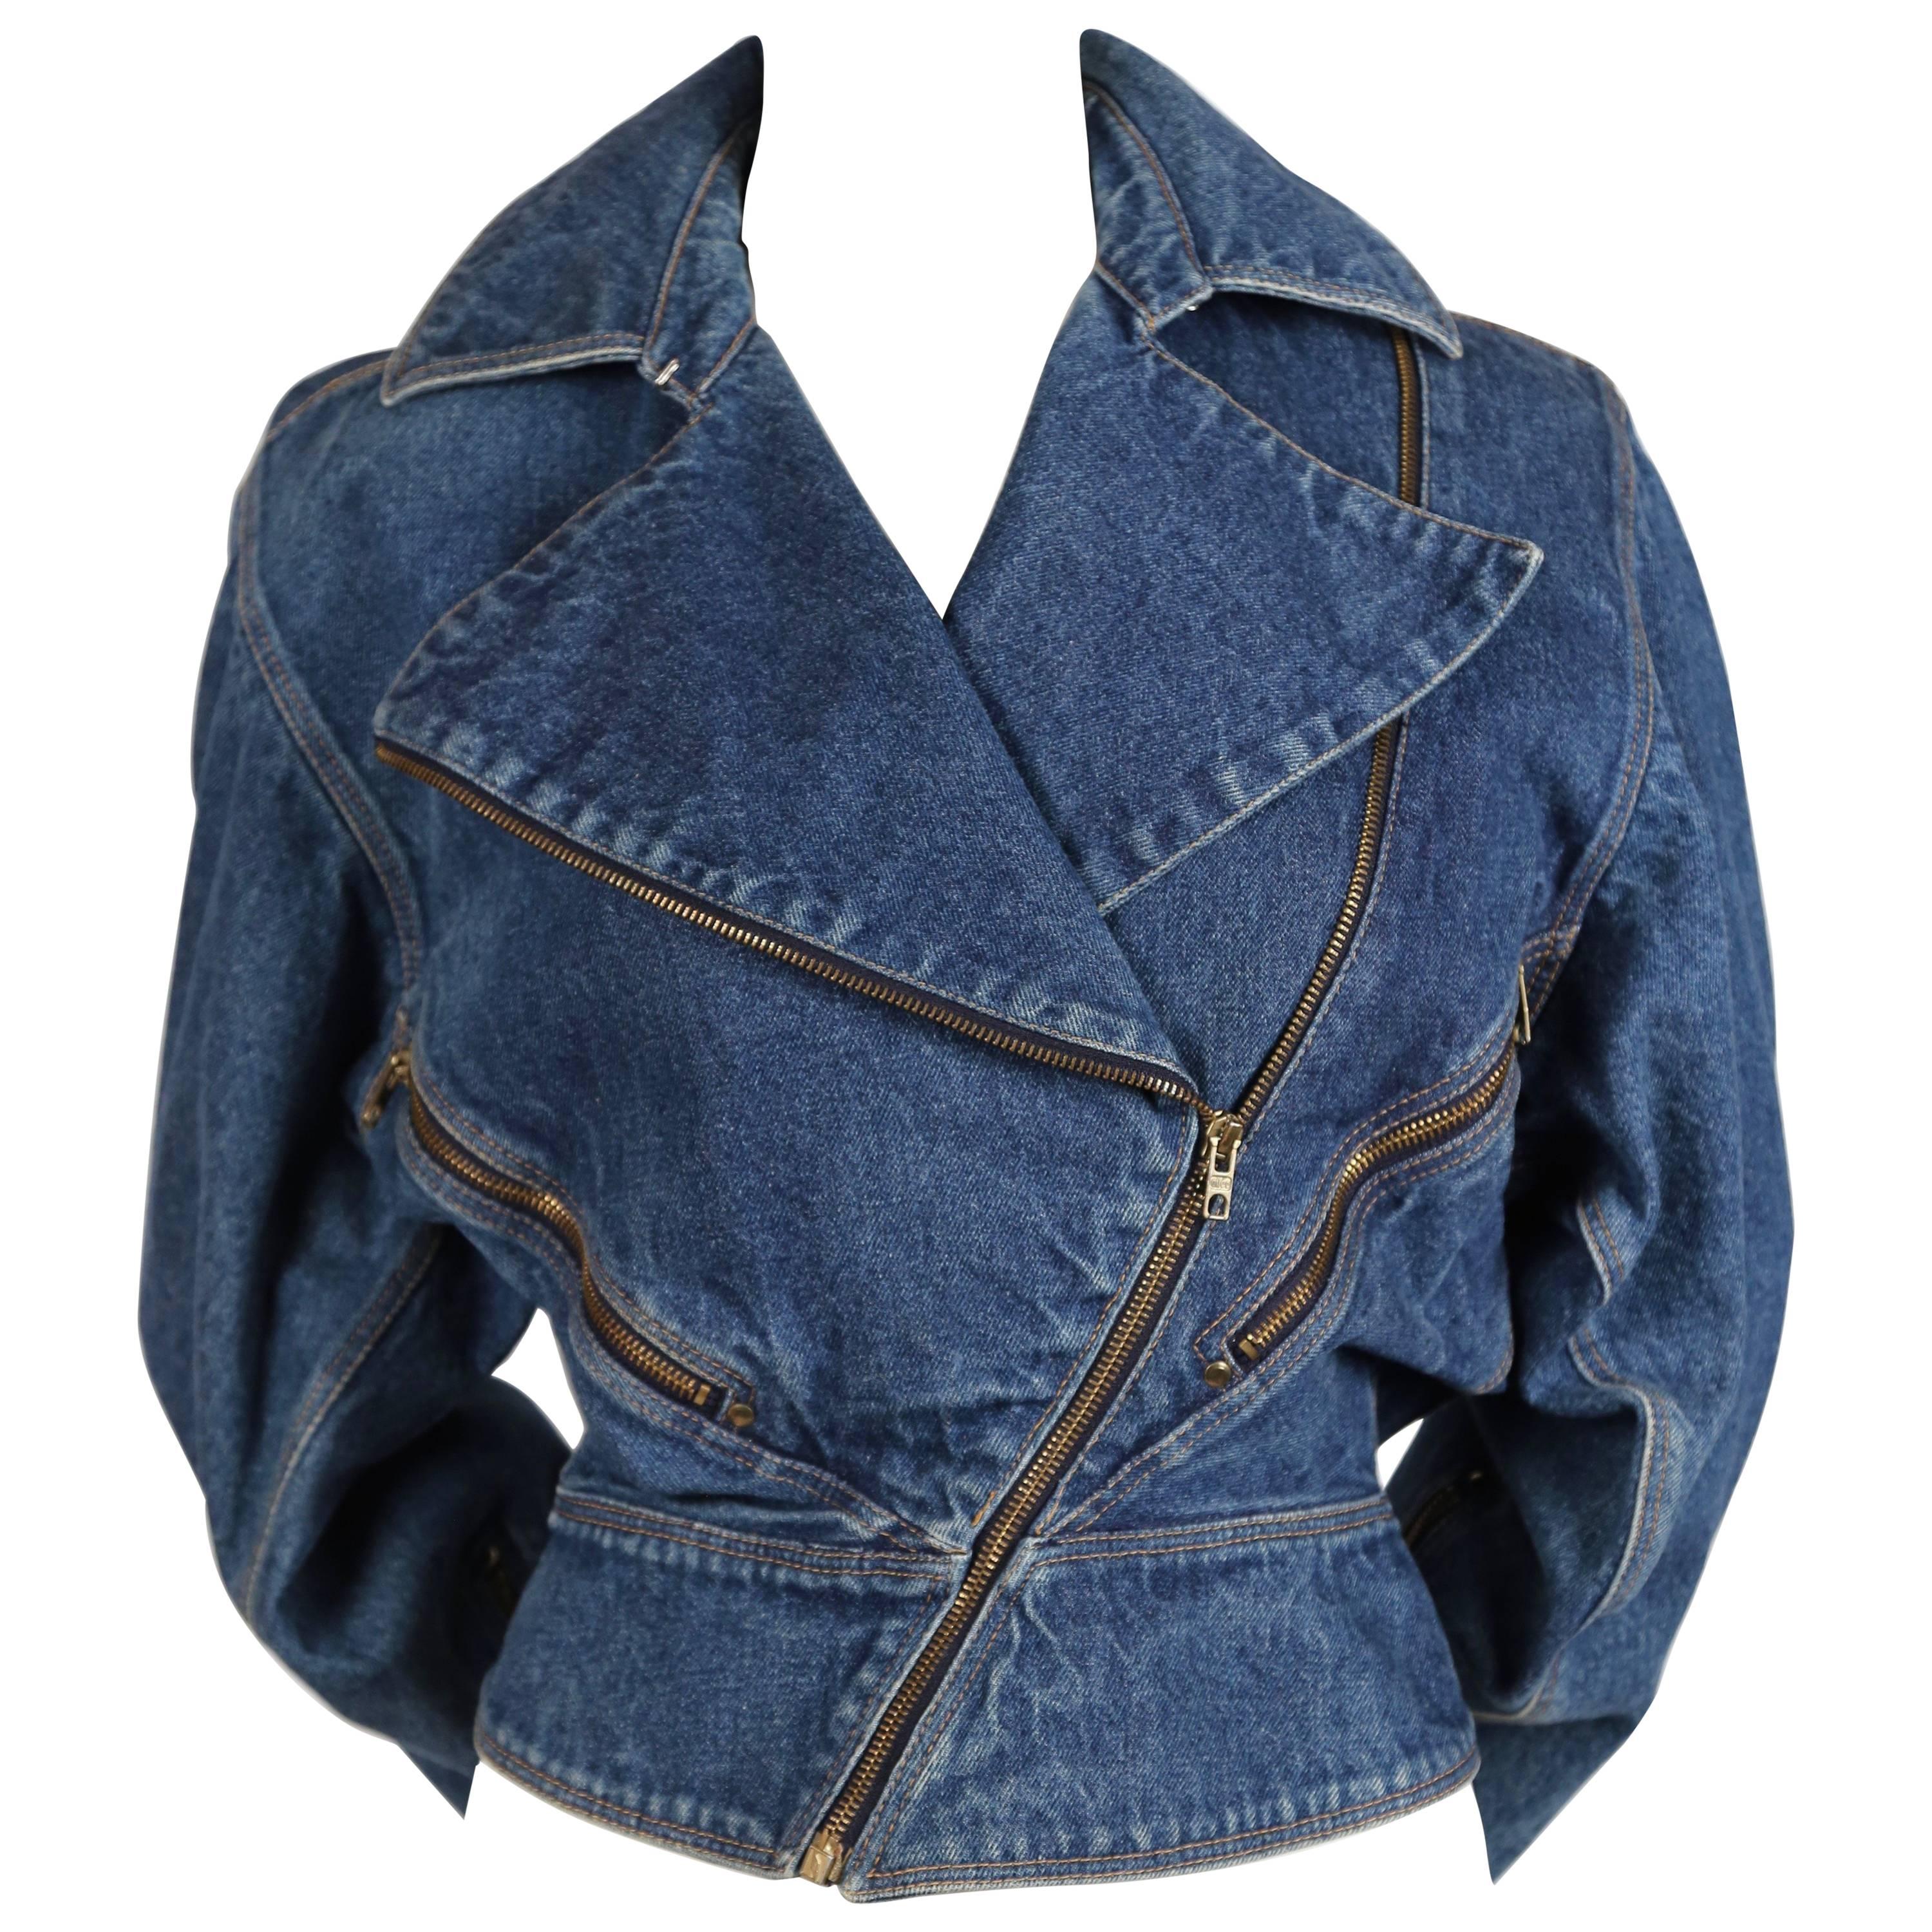 1985 AZZEDINE ALAIA denim jacket with zip closures